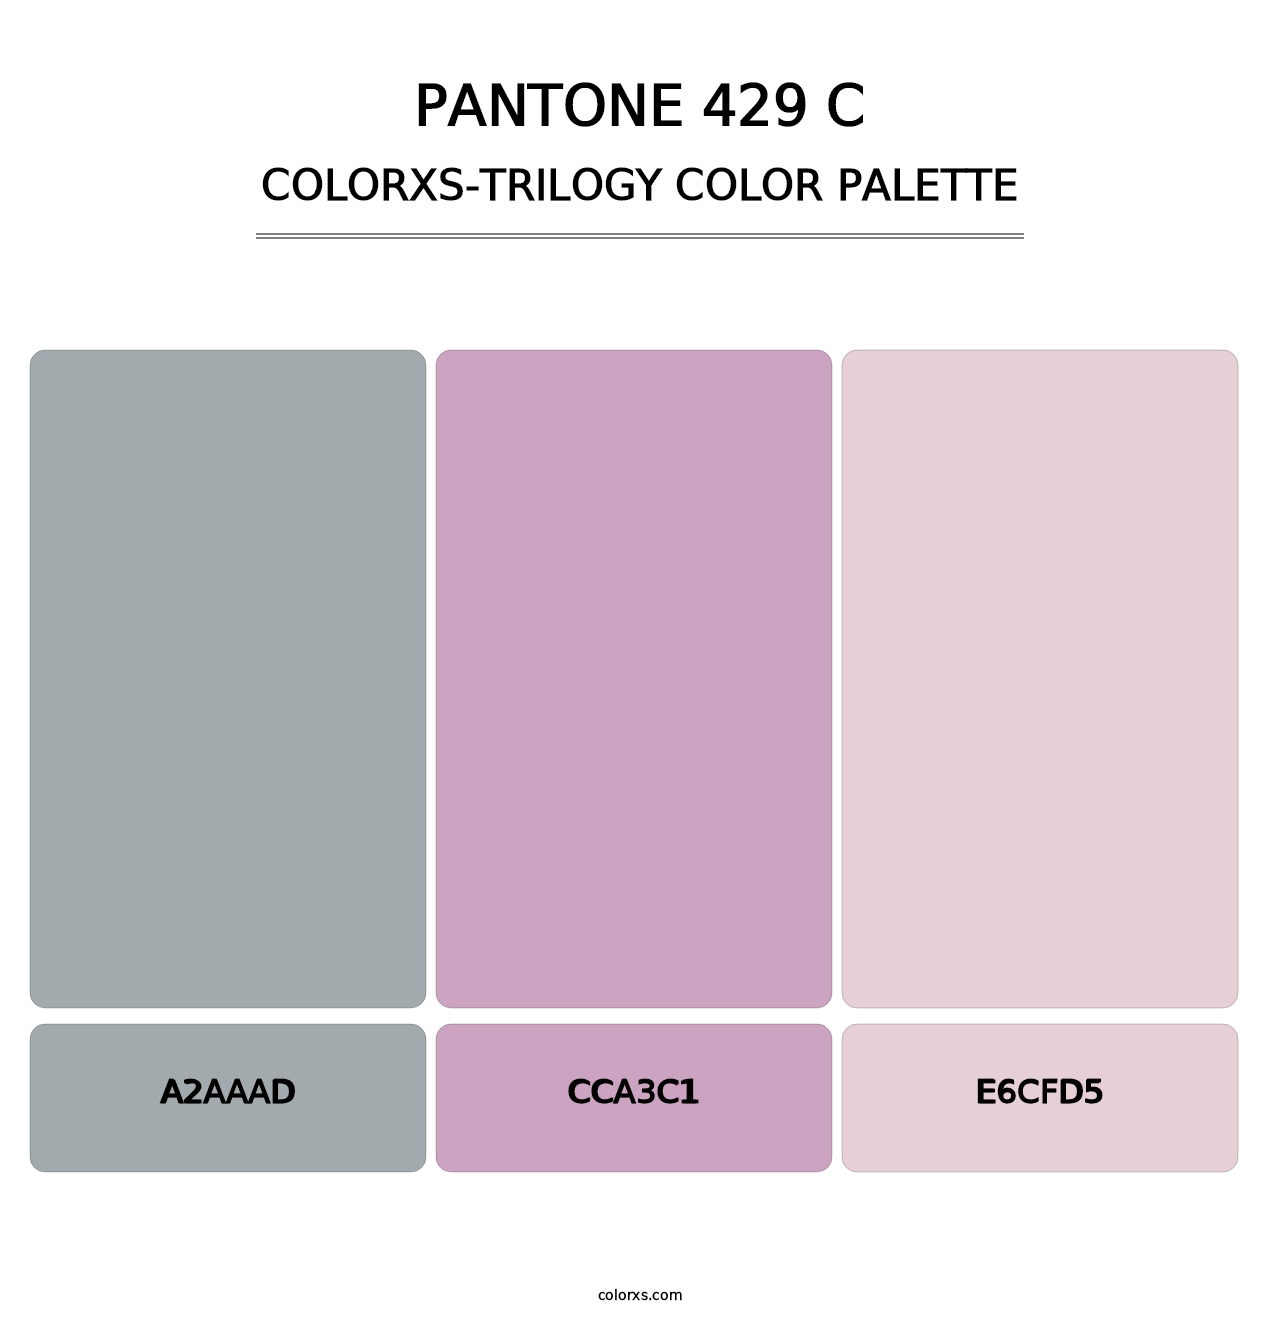 PANTONE 429 C - Colorxs Trilogy Palette